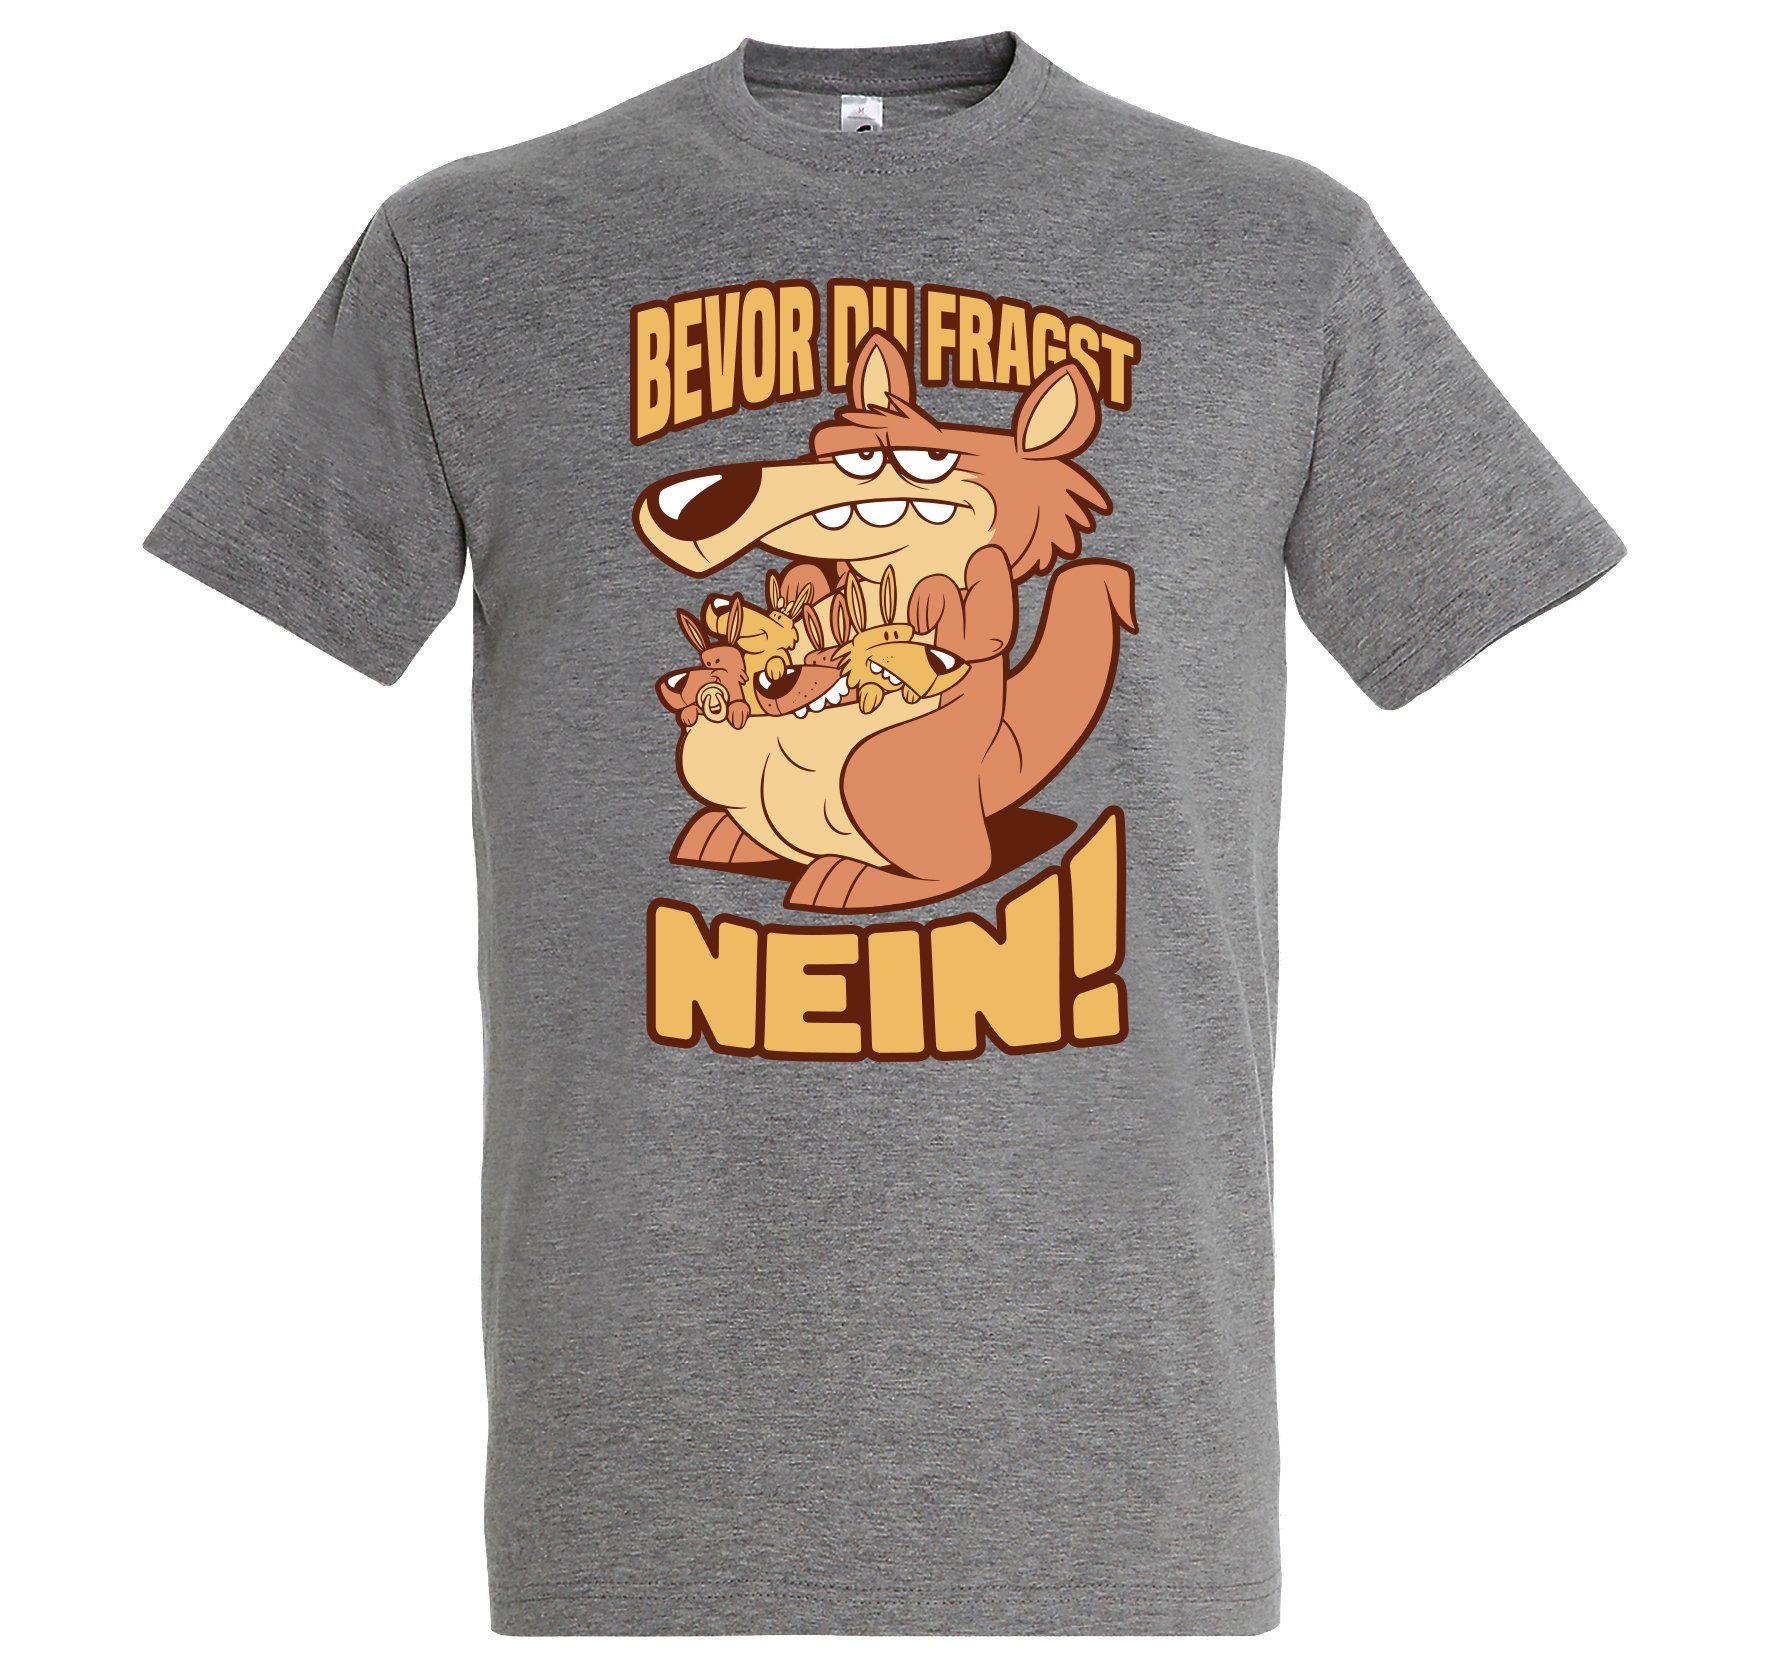 NEIN Grau Herren Youth lustigem Designz Aufdruck BEVOR Print-Shirt DU T-Shirt FRAGST mit Spruch